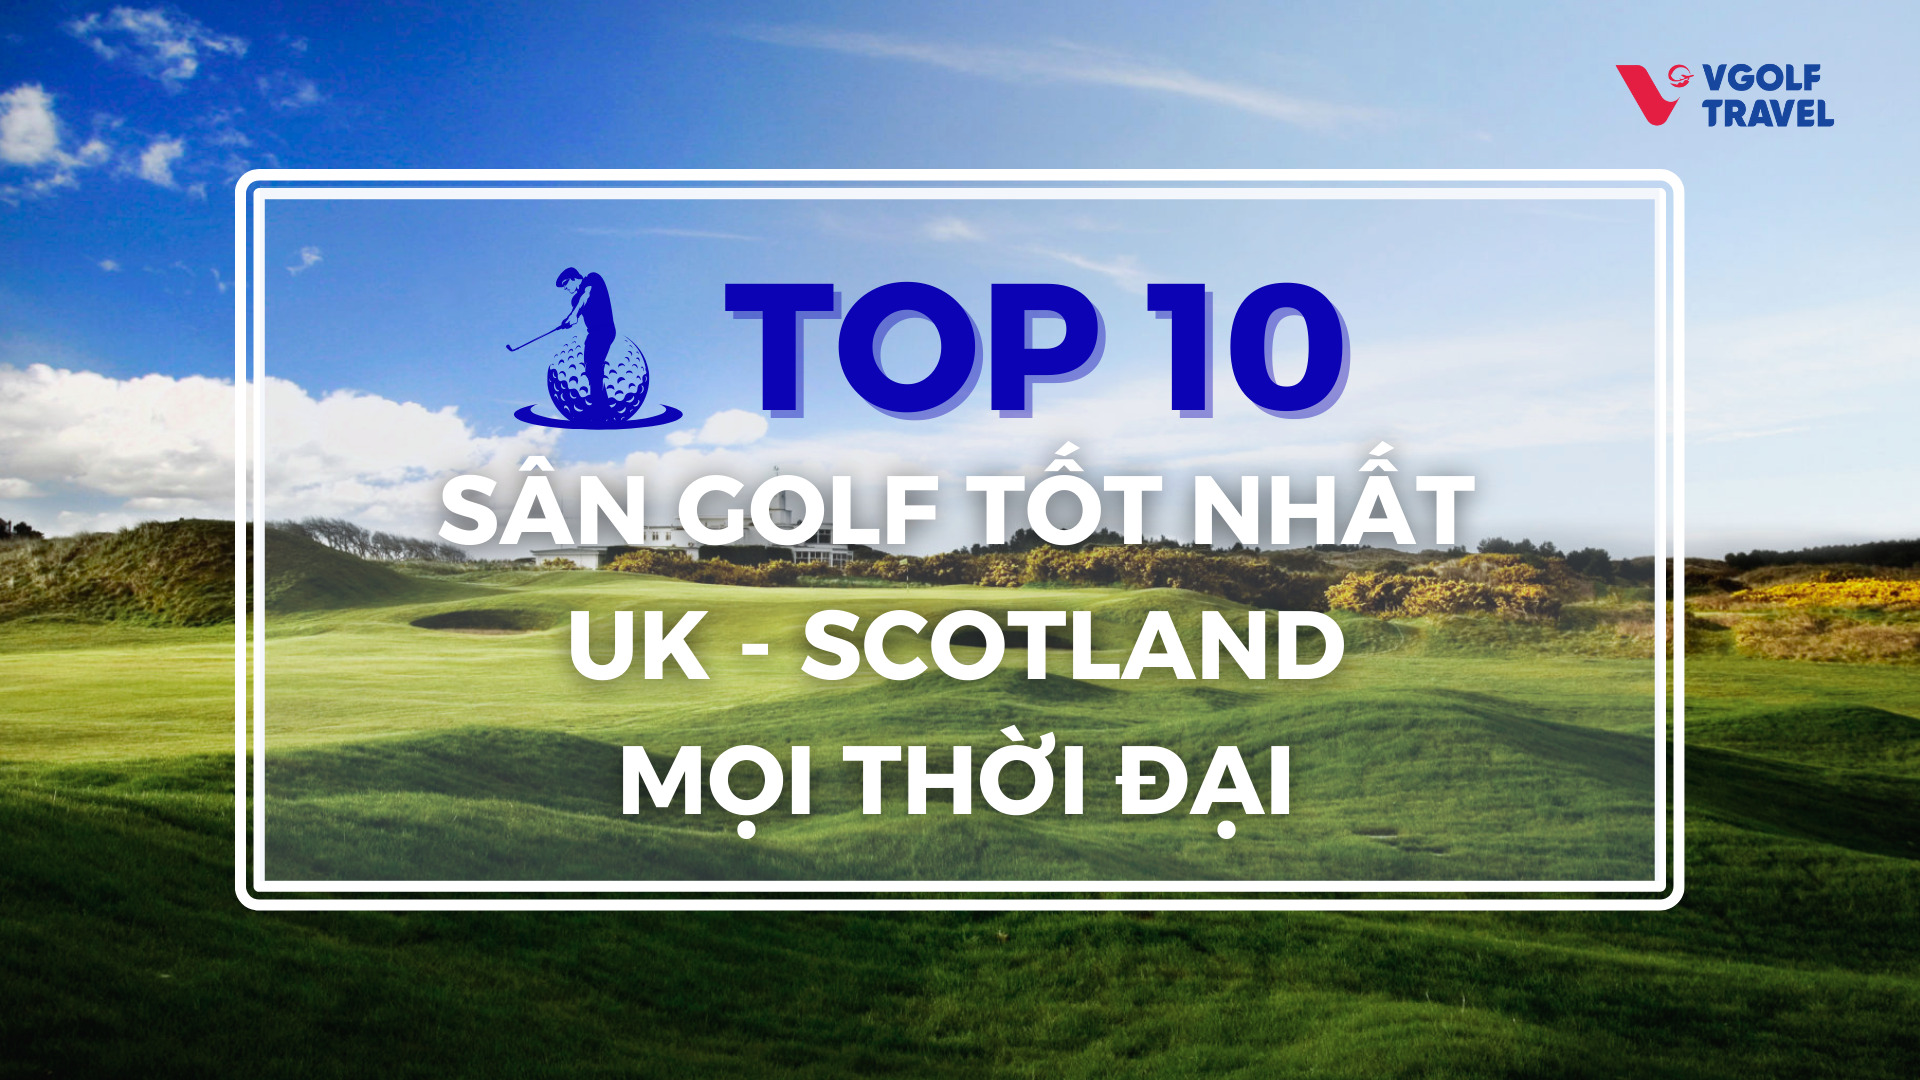 Top 10 sân golf tốt nhất UK - Scotland mọi thời đại